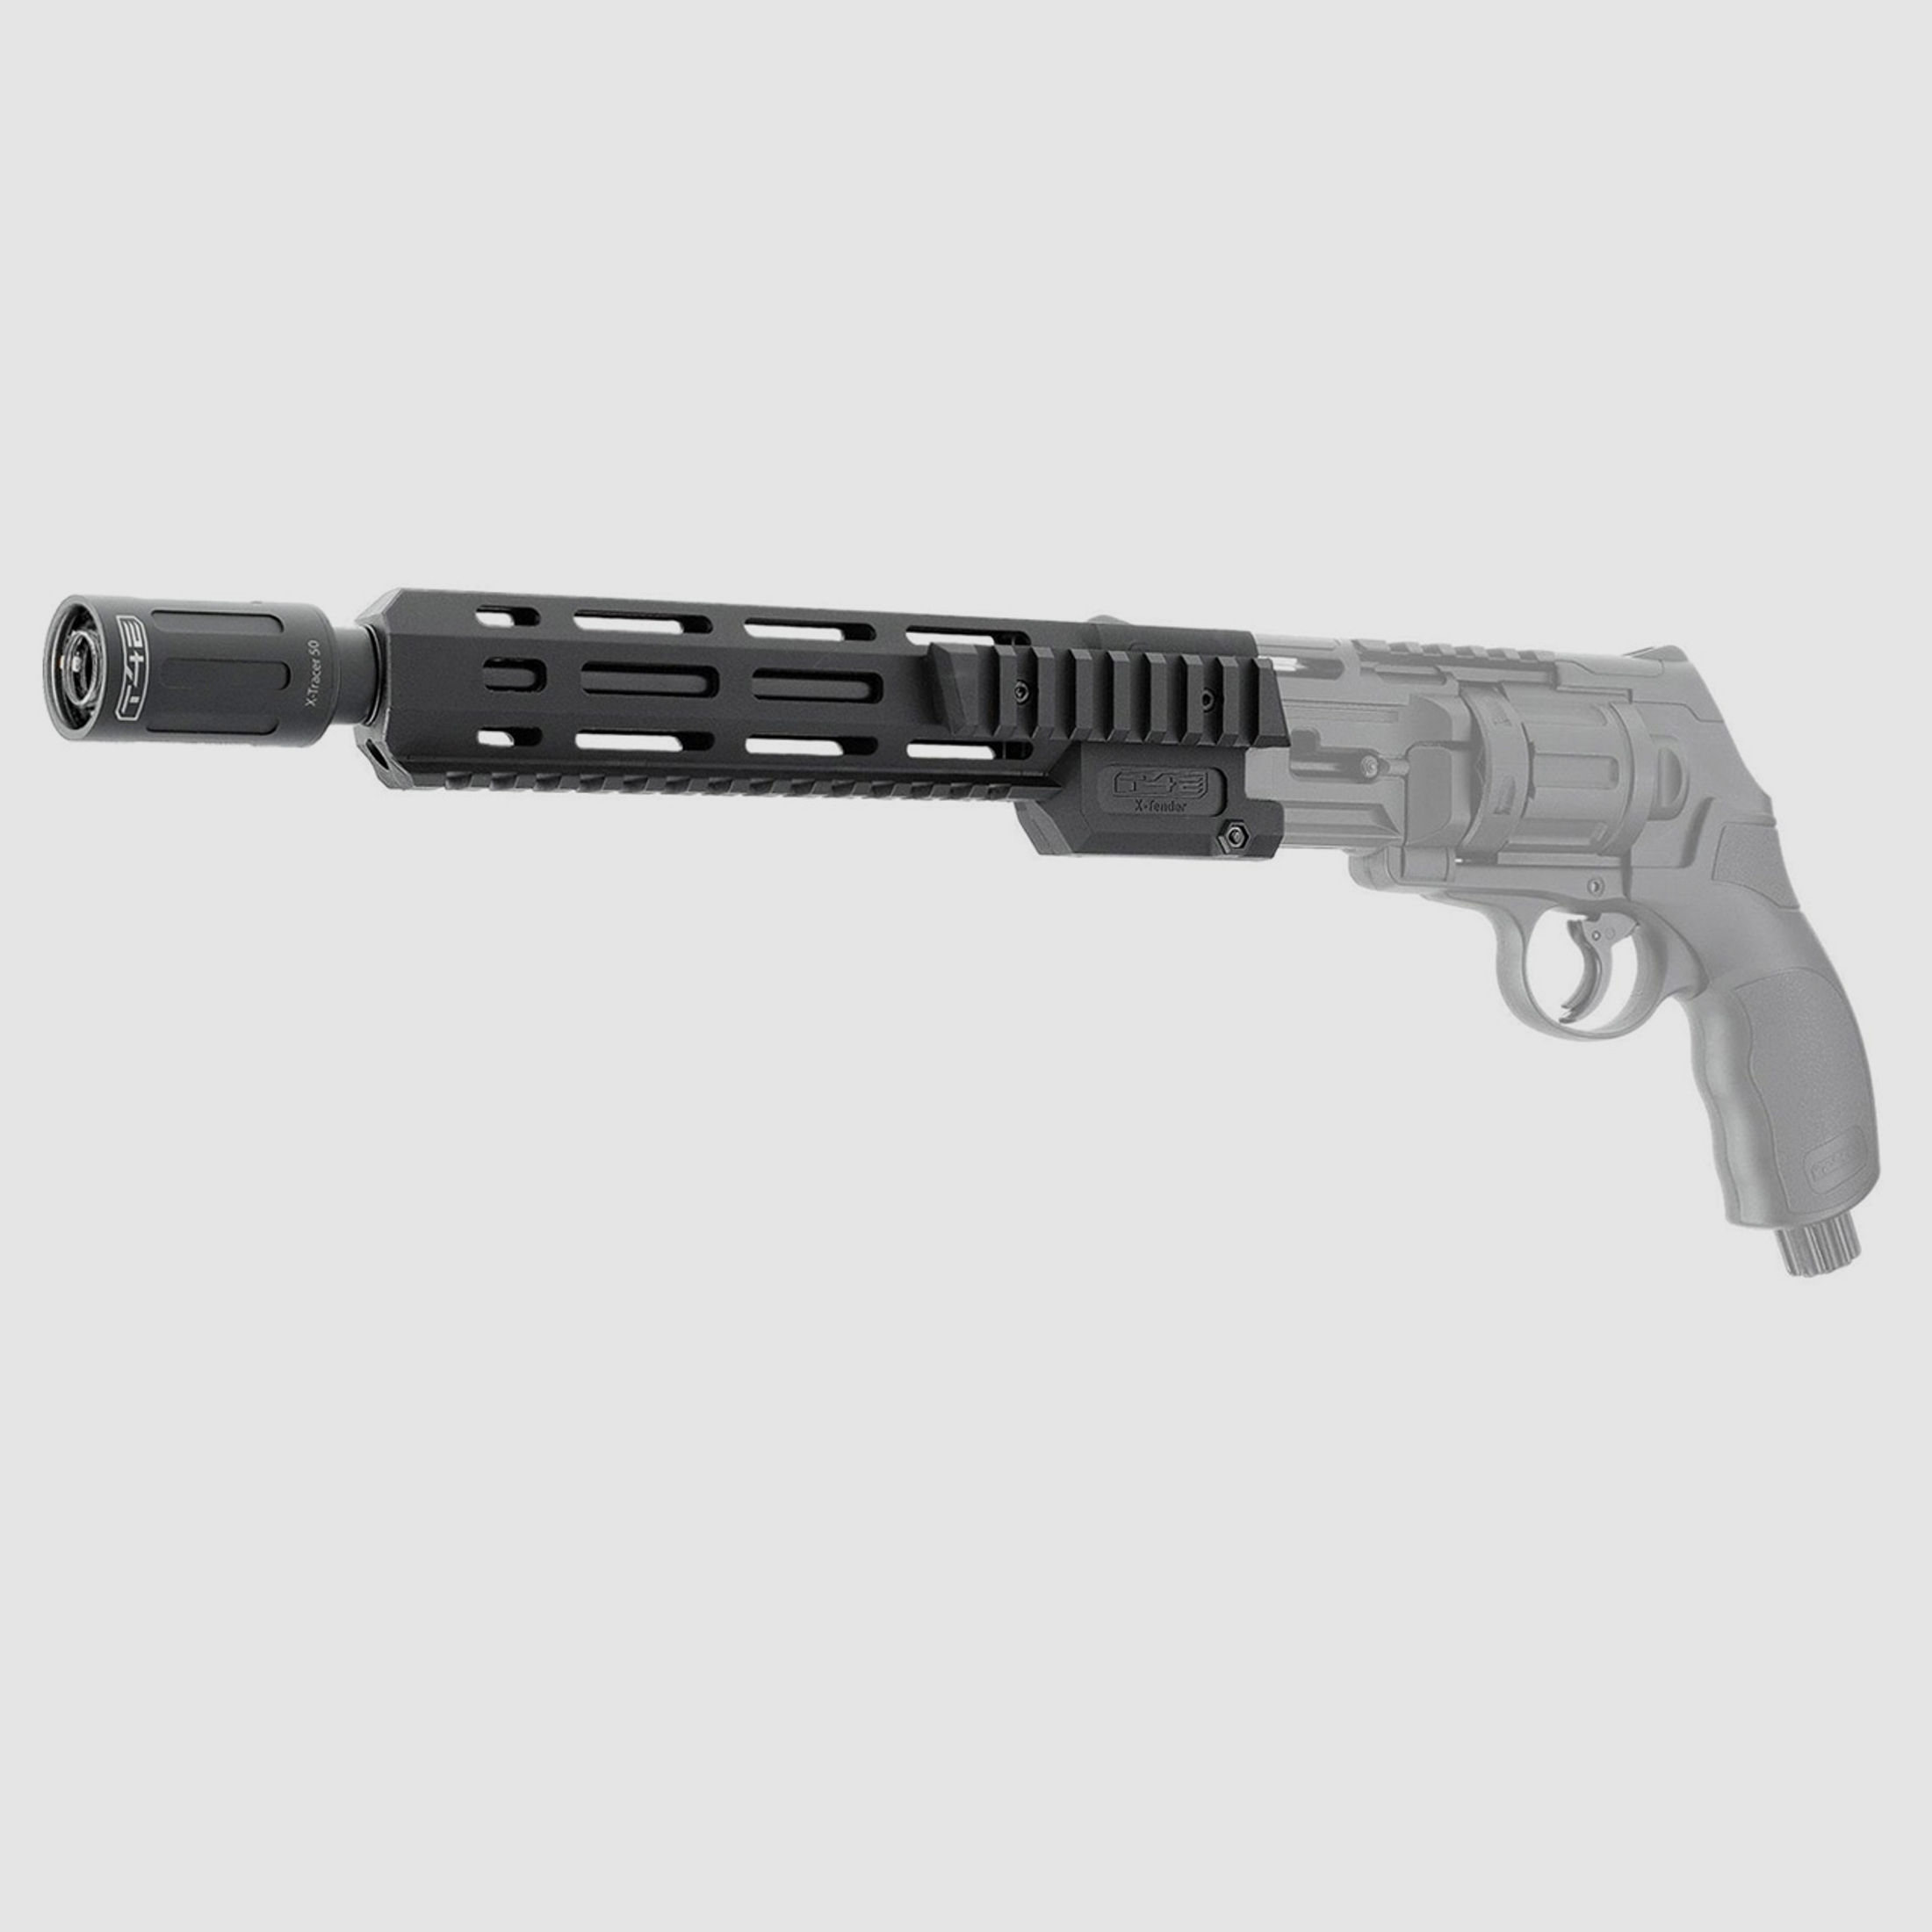 LED UV-Tracer T4E X-Tracer 50 fĂĽr TR 50 X-Tender fĂĽr CO2 Markierer Home Defense Revolver Umarex HDR 50